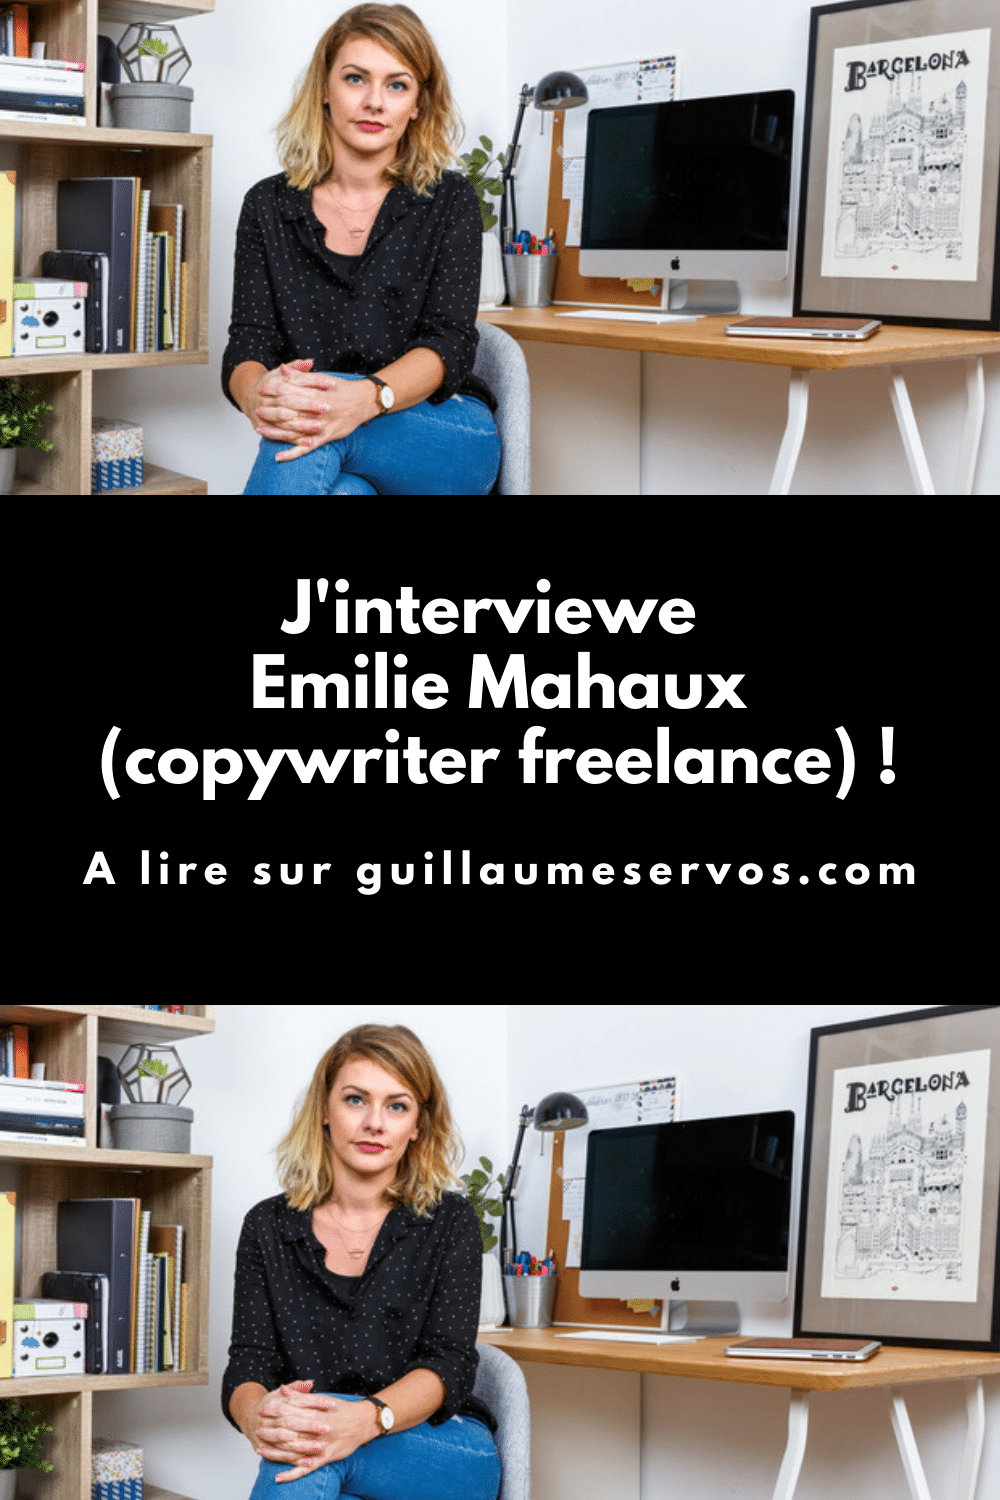 Découvre mon interview avec Emilie Mahaux, copywriteur freelance. Son rapport au blogging, aux réseaux sociaux et au voyage.